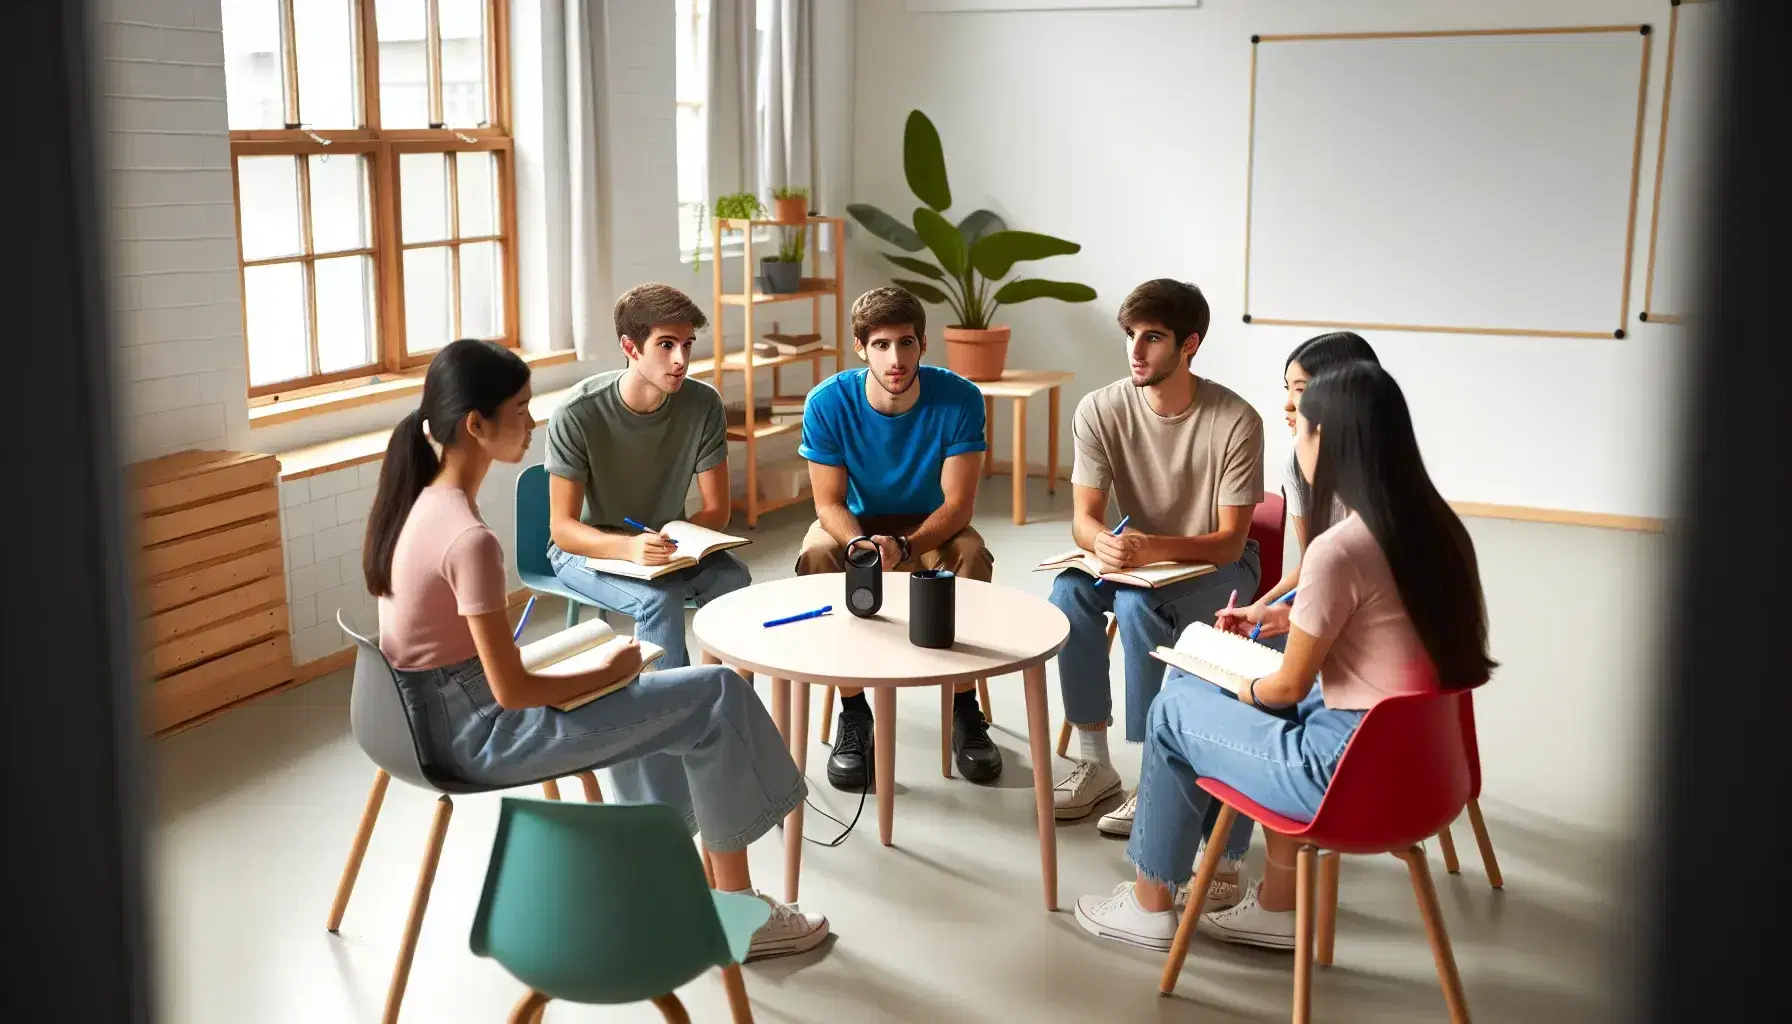 Estudiantes diversos sentados en círculo en aula iluminada discutiendo con cuadernos y grabadora en mesa, con pizarra y planta al fondo.